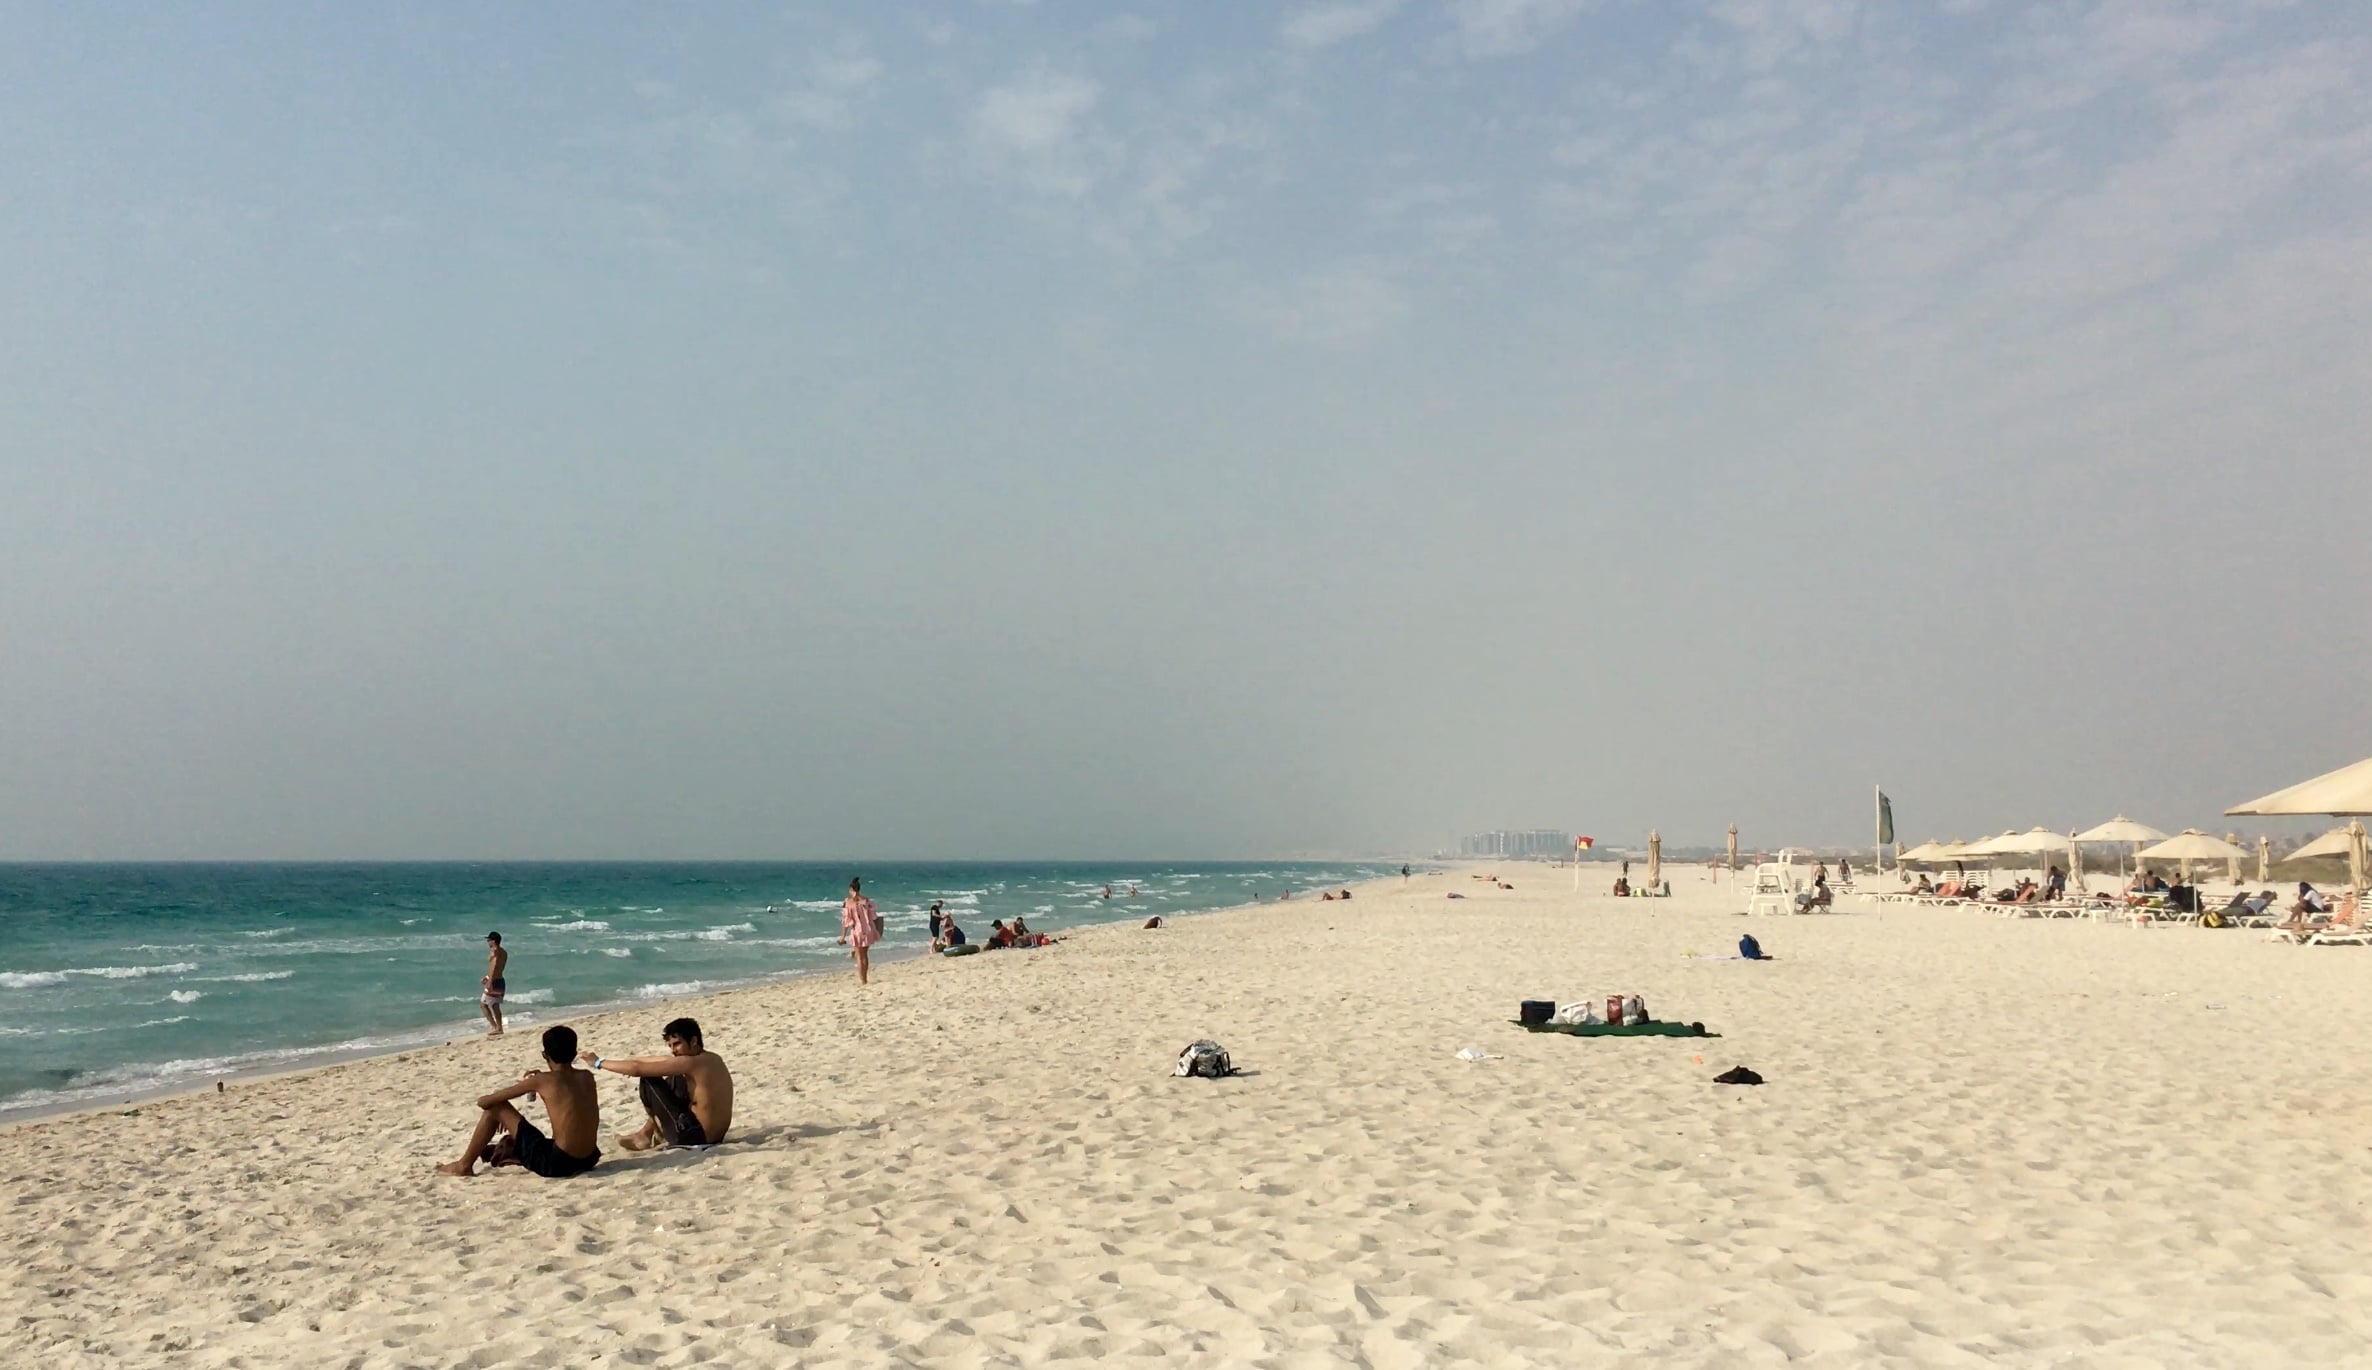 La plage publique de Saadiyat à Abu Dhabi